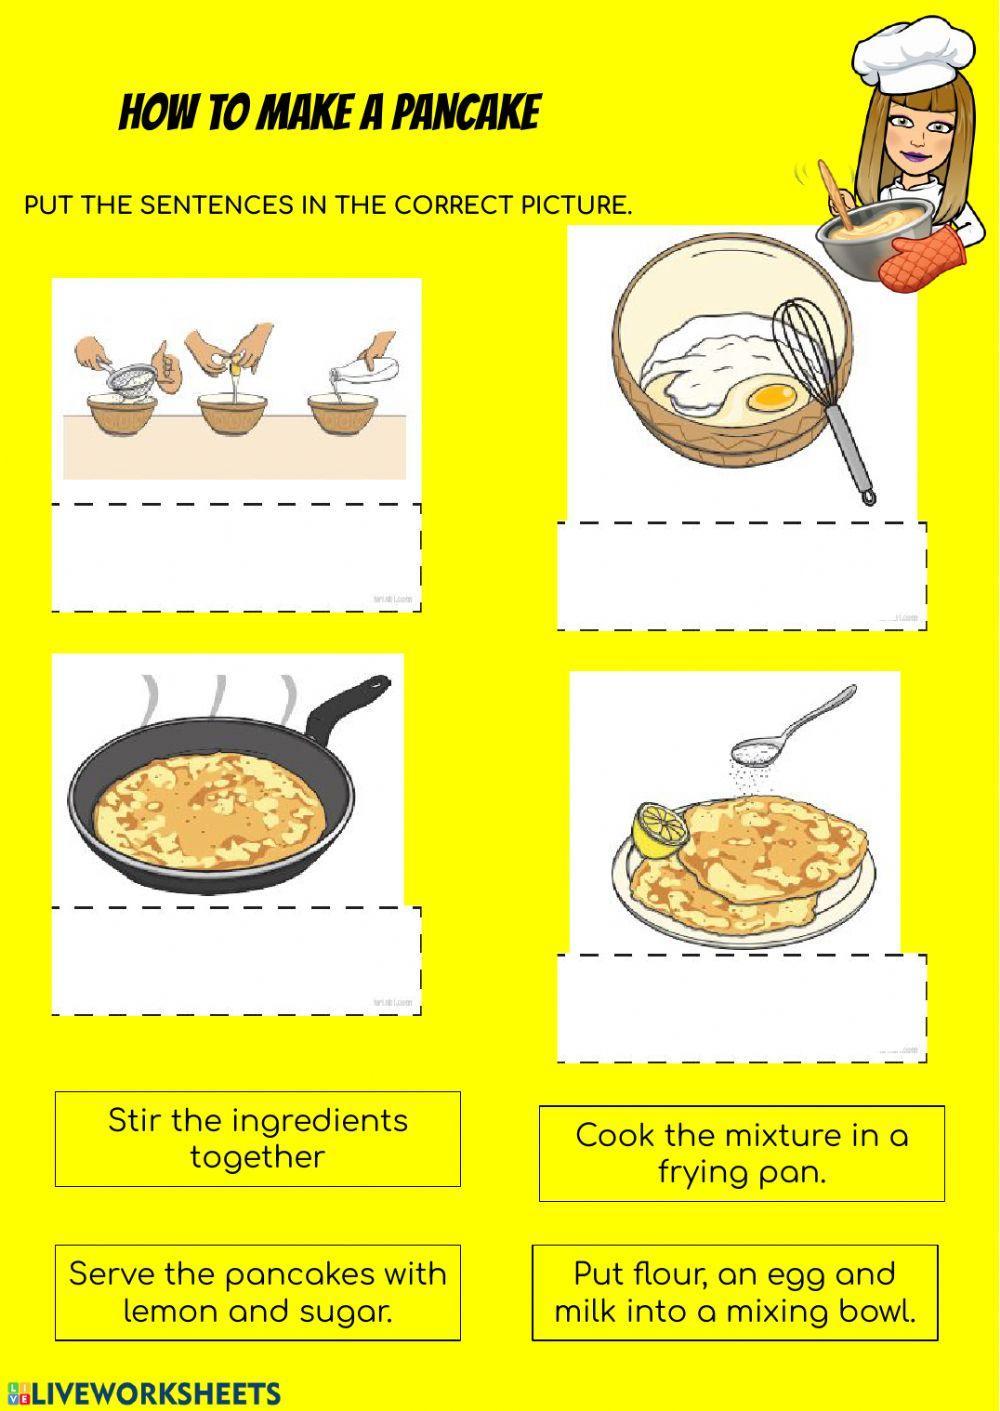 How to make a pancake